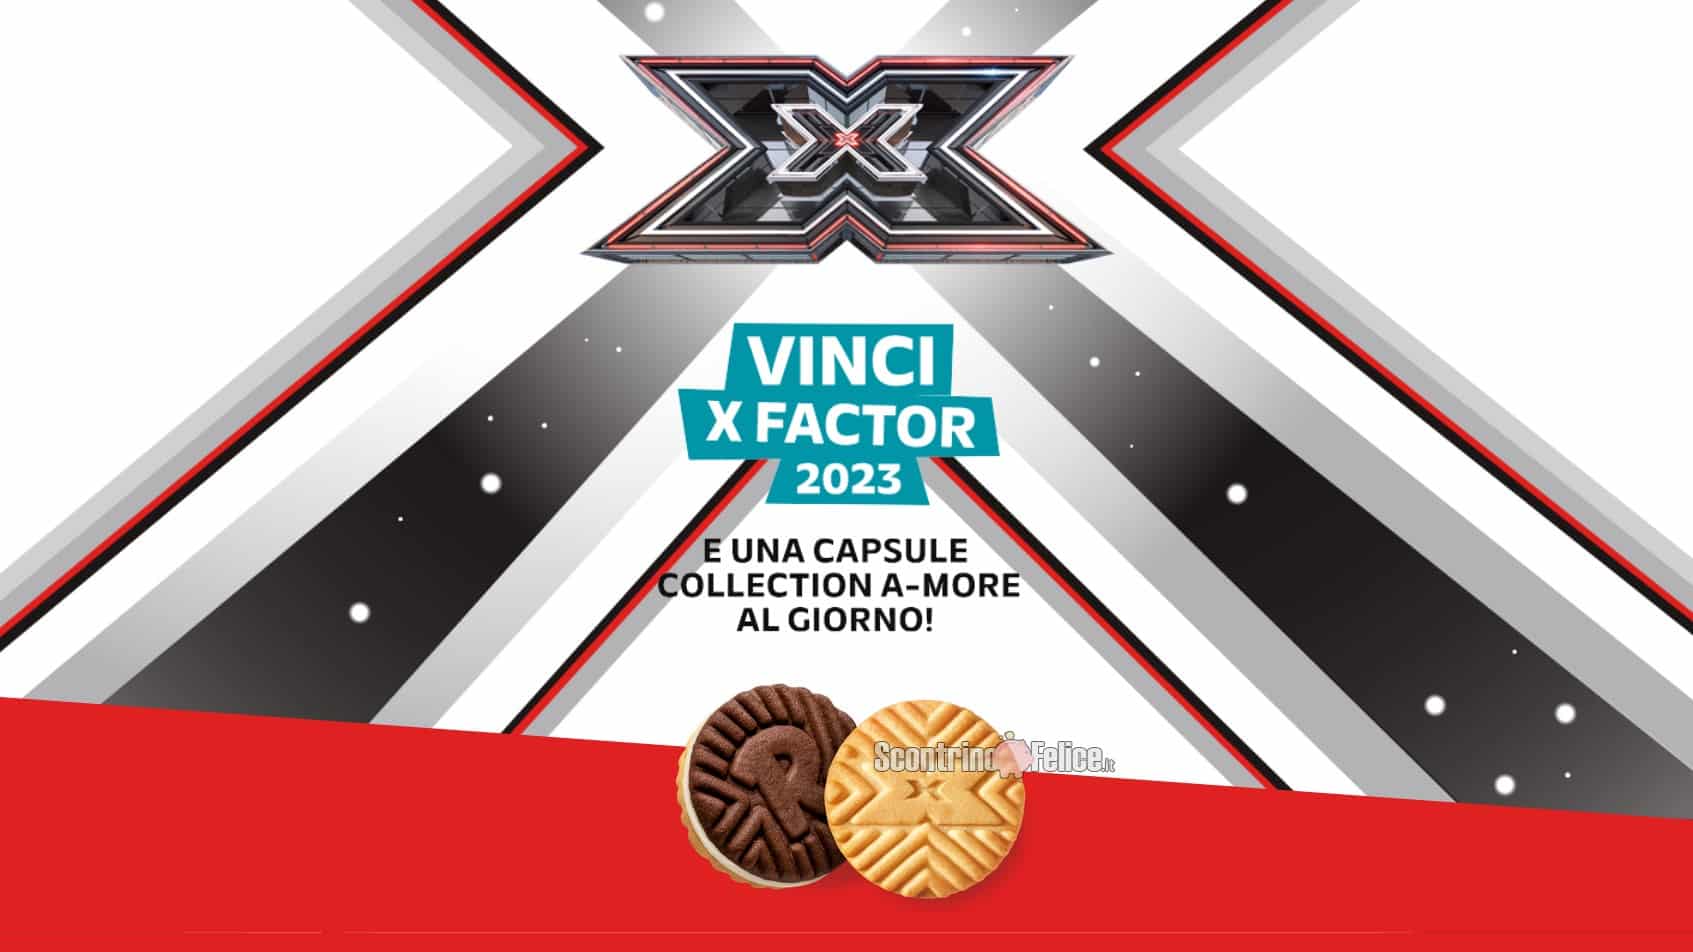 Concorso Ringo vinci X Factor 2023 e 1 capsule collection A-More al giorno